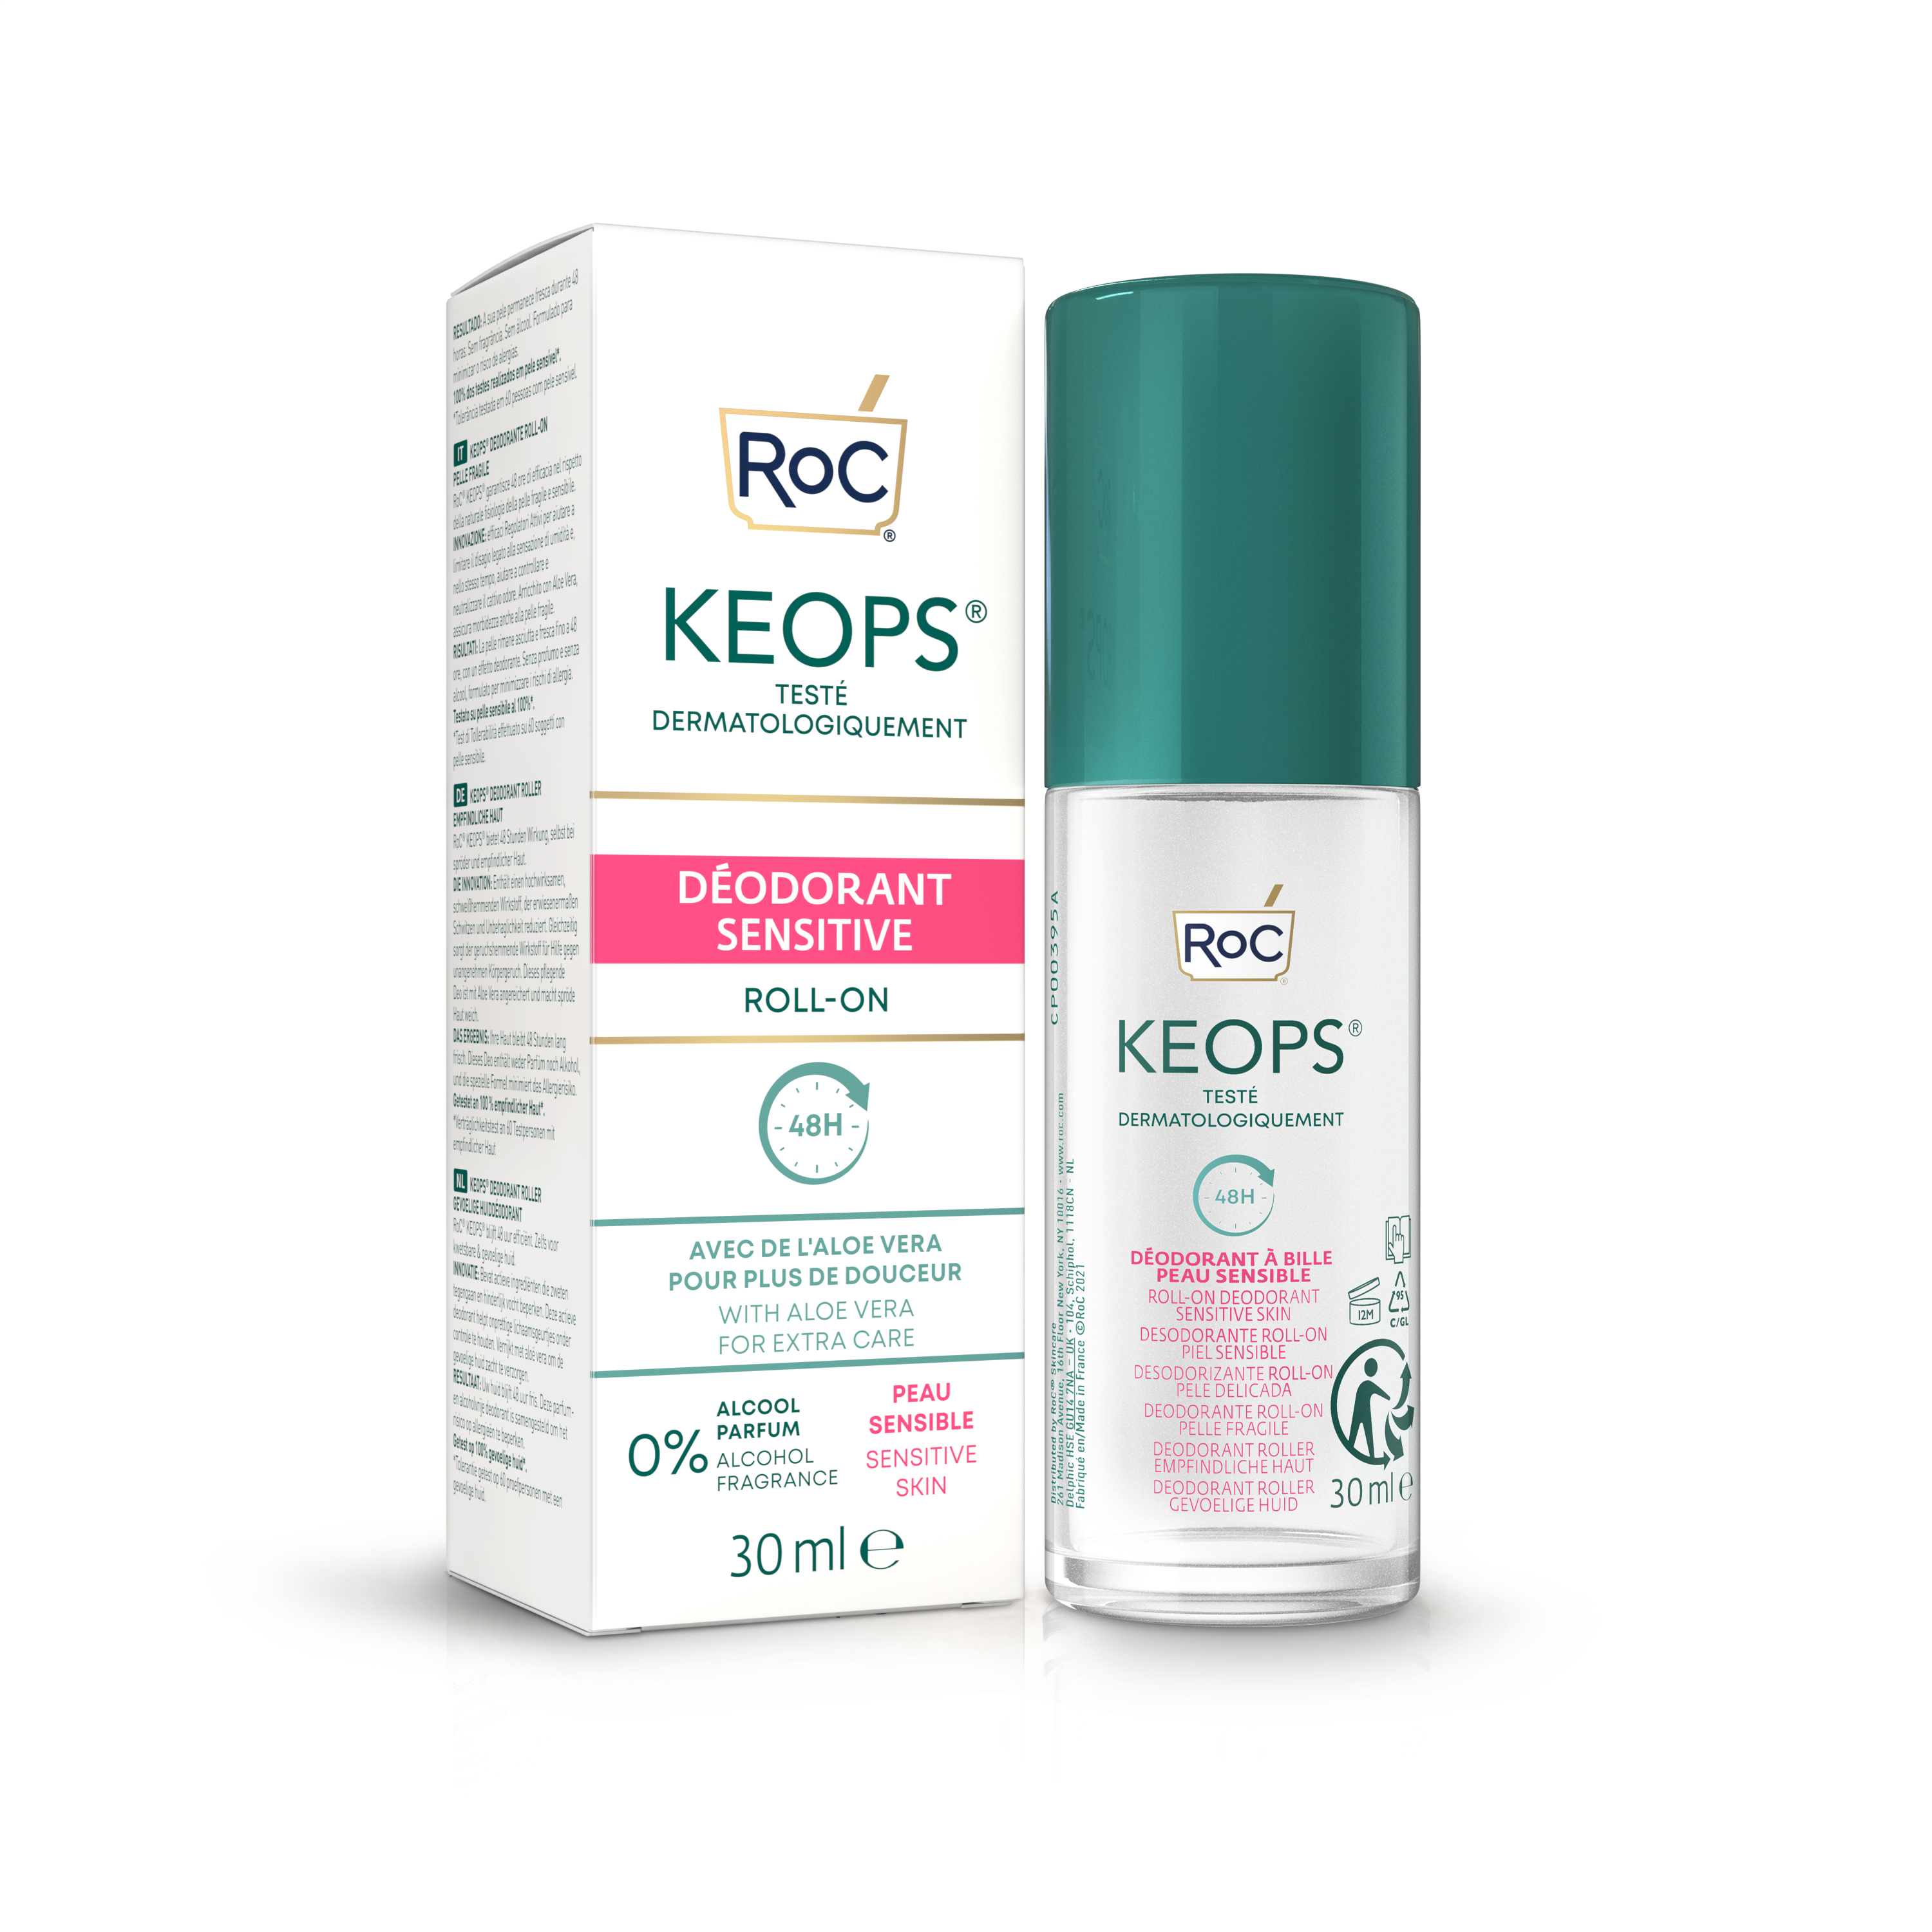 Deodorant roll-on pentru piele sensibila Keops Sensitive, 30 ml, ROC